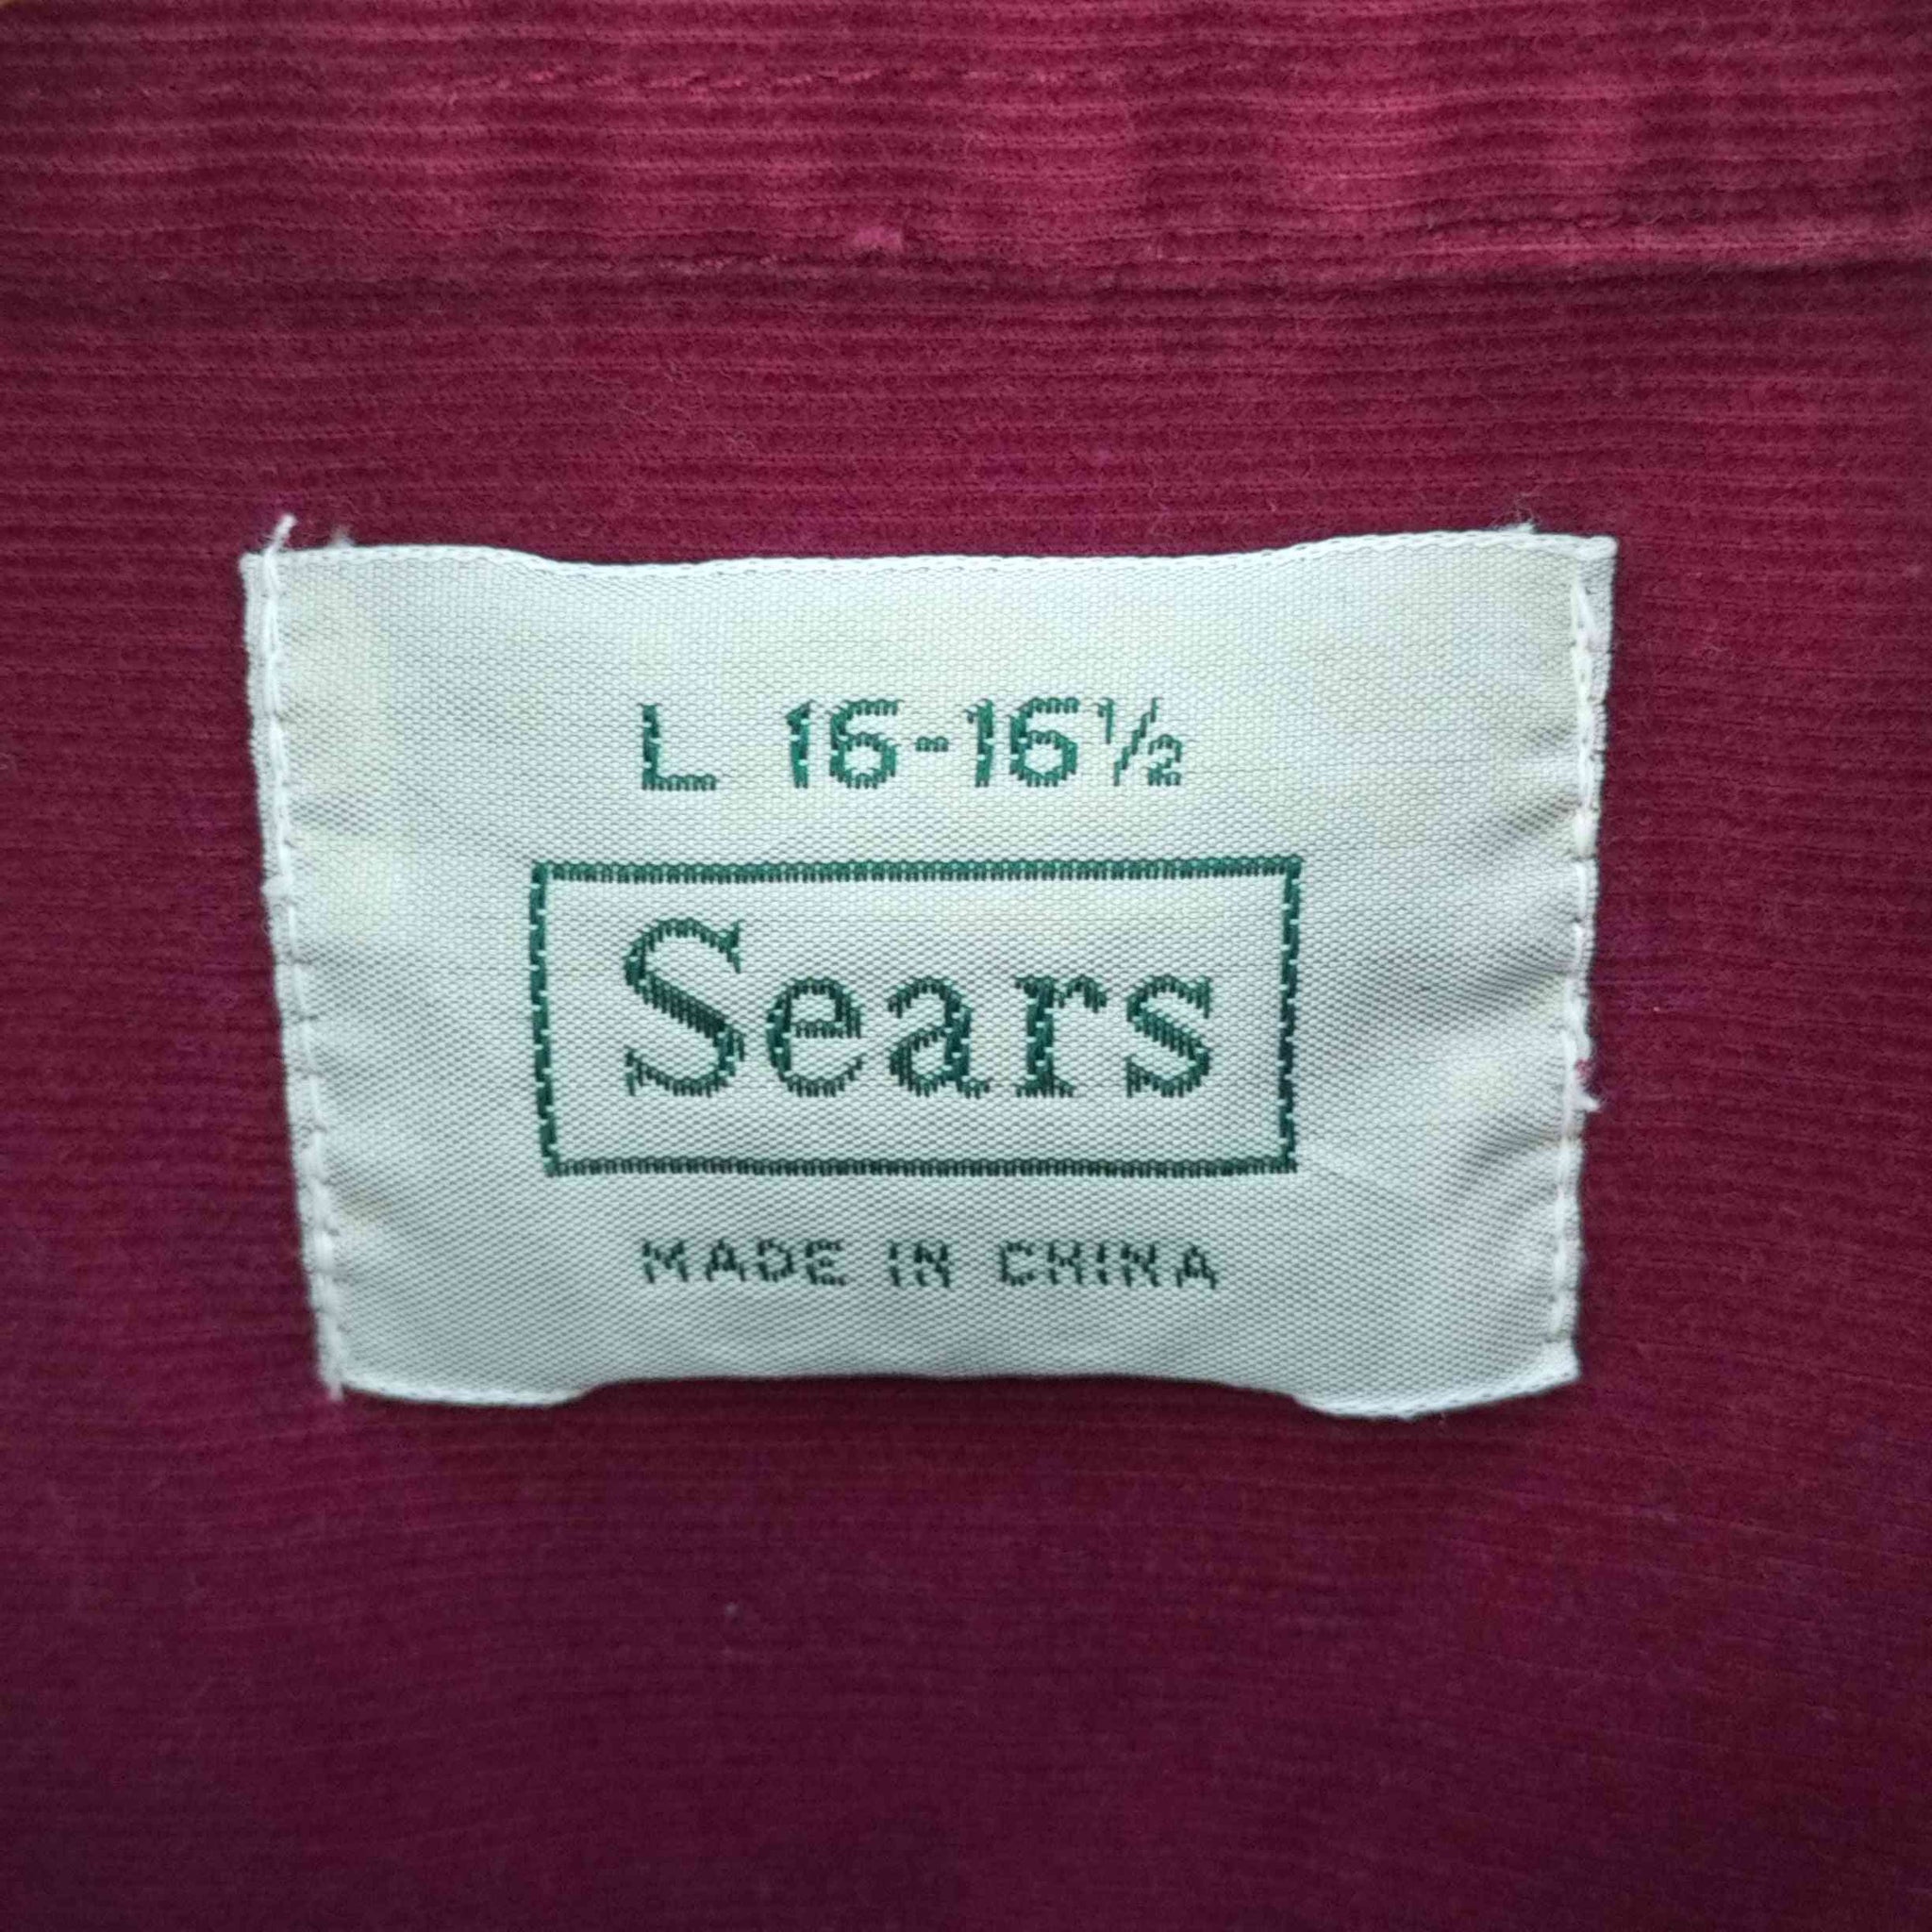 Sears(シアーズ)レギュラーカラー コーデュロイシャツ